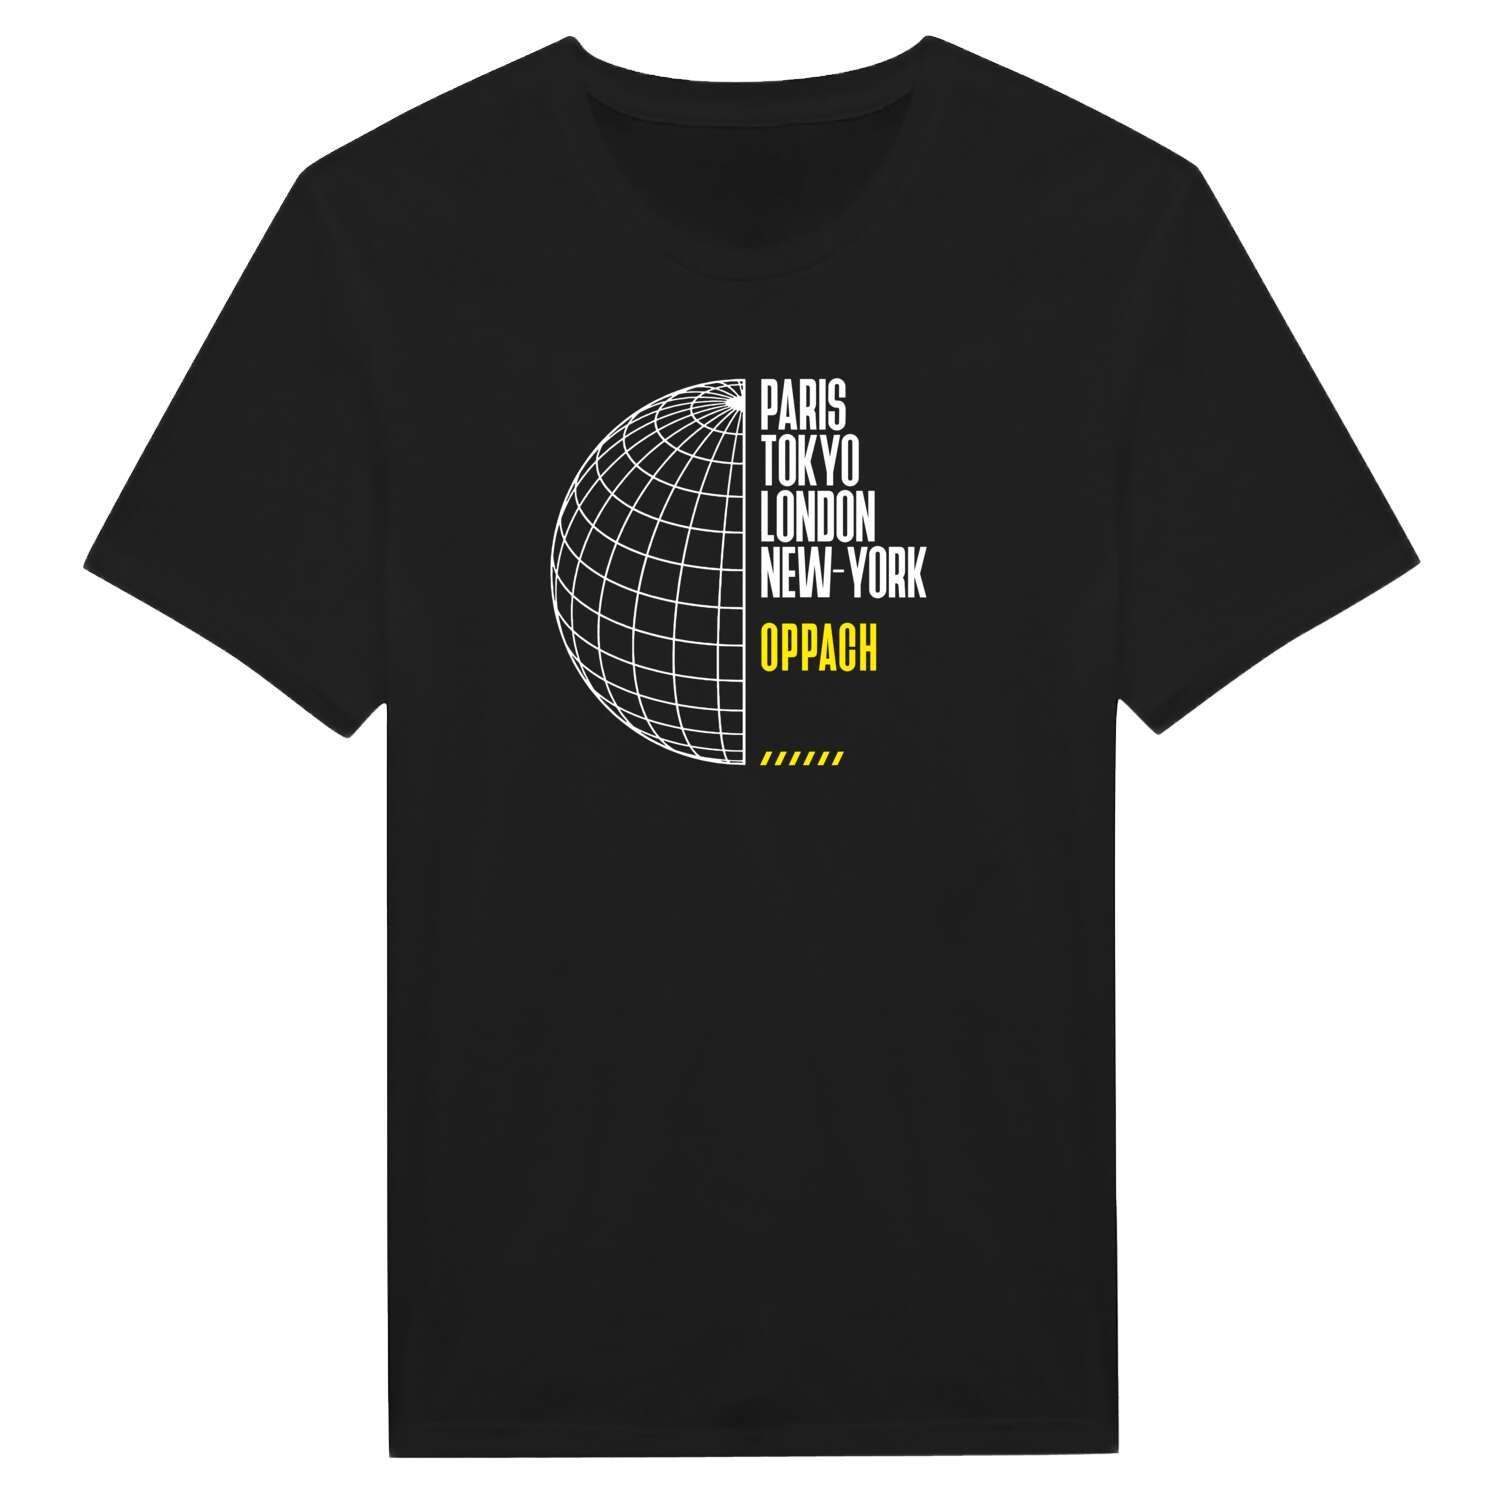 Oppach T-Shirt »Paris Tokyo London«